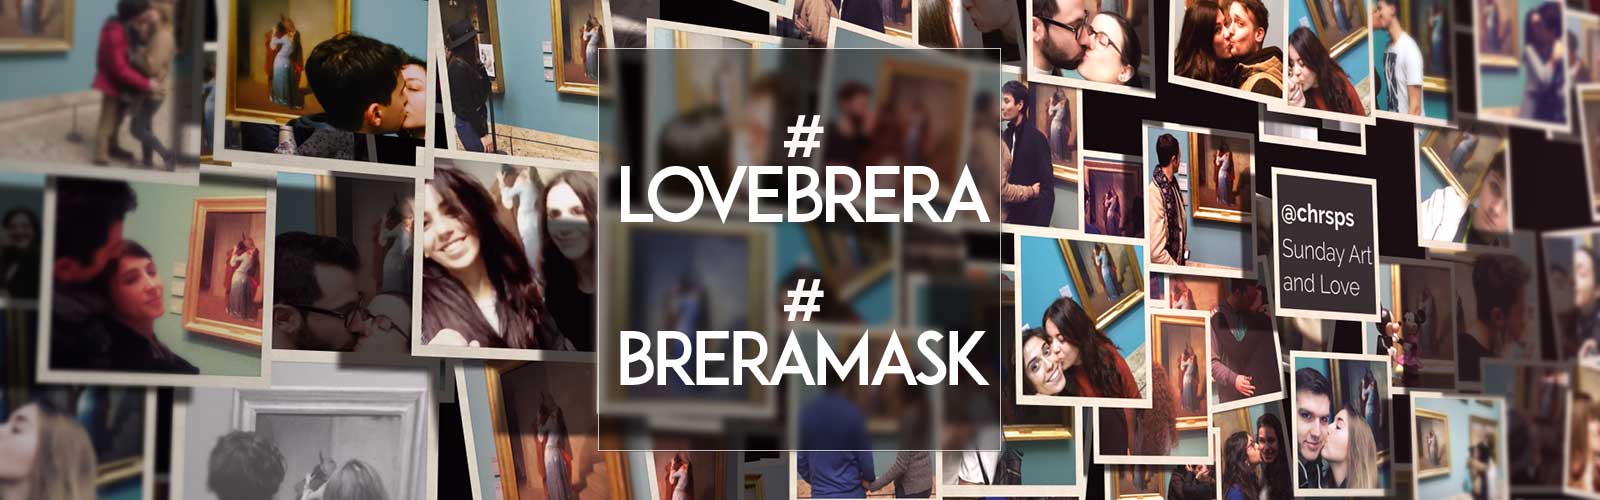 A febbraio in Pinacoteca con #Lovebrera e #Breramask